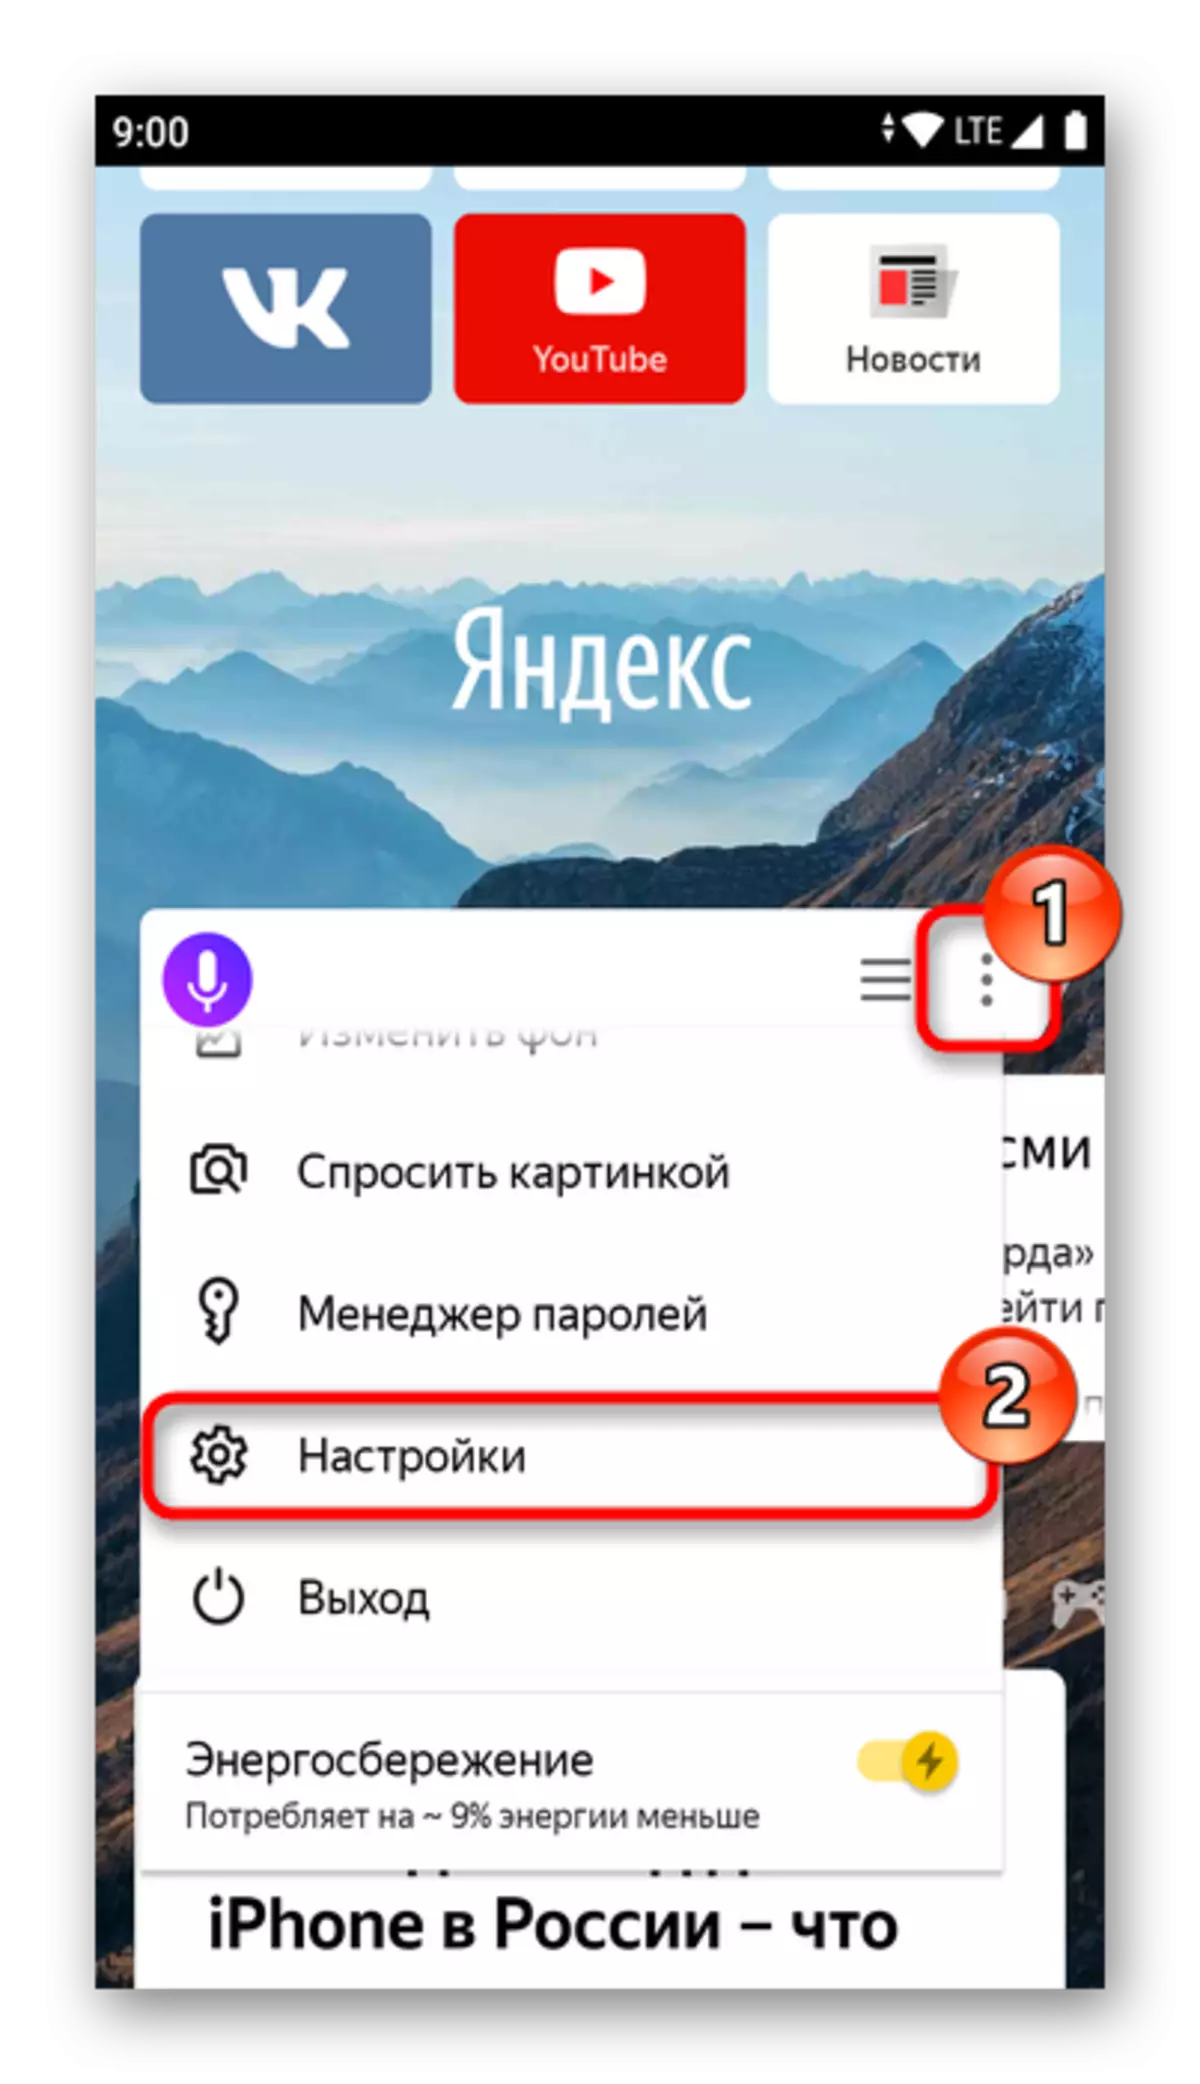 Asup kana ménu setelan Yandex.bauser